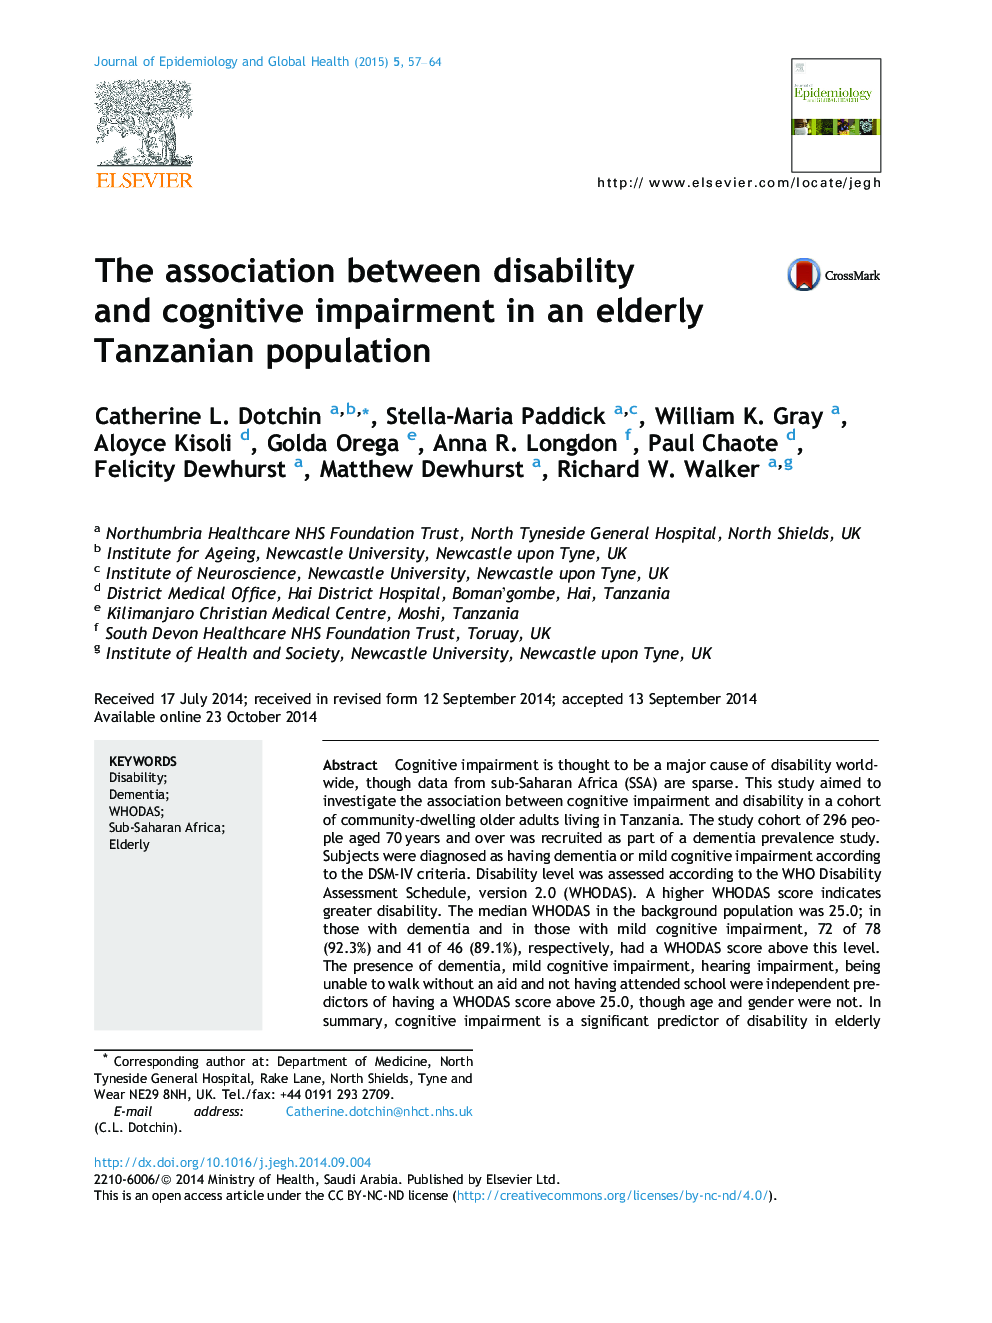 ارتباط بین معلولیت و اختلال شناختی در جمعیت سالخوردگان تانزانیا